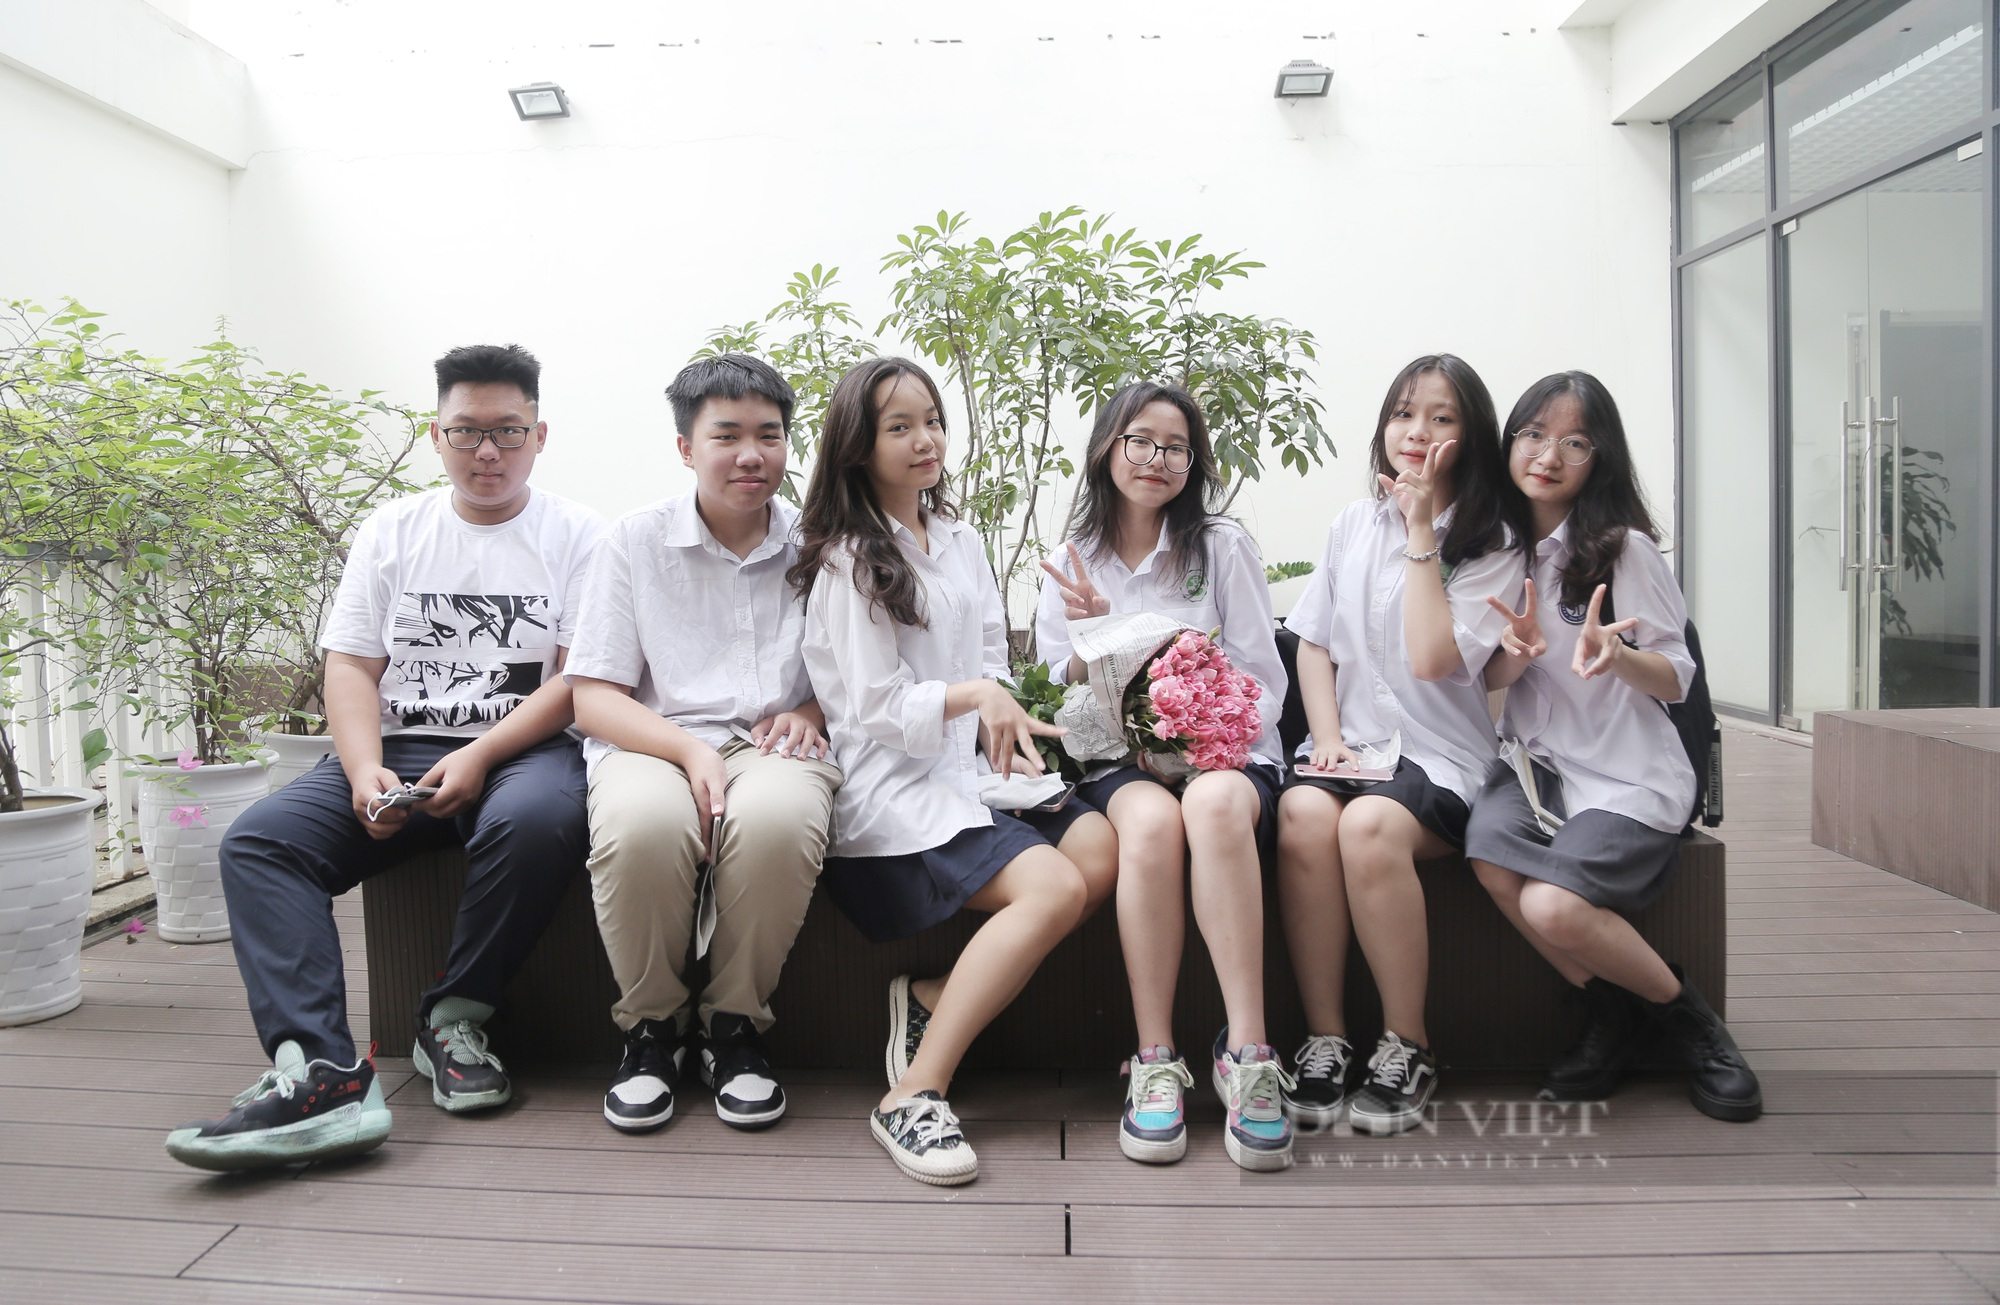 Ngày học cuối cùng đầy ắp kỷ niệm, học sinh Hà Nội chính thức nghỉ hè - Ảnh 5.